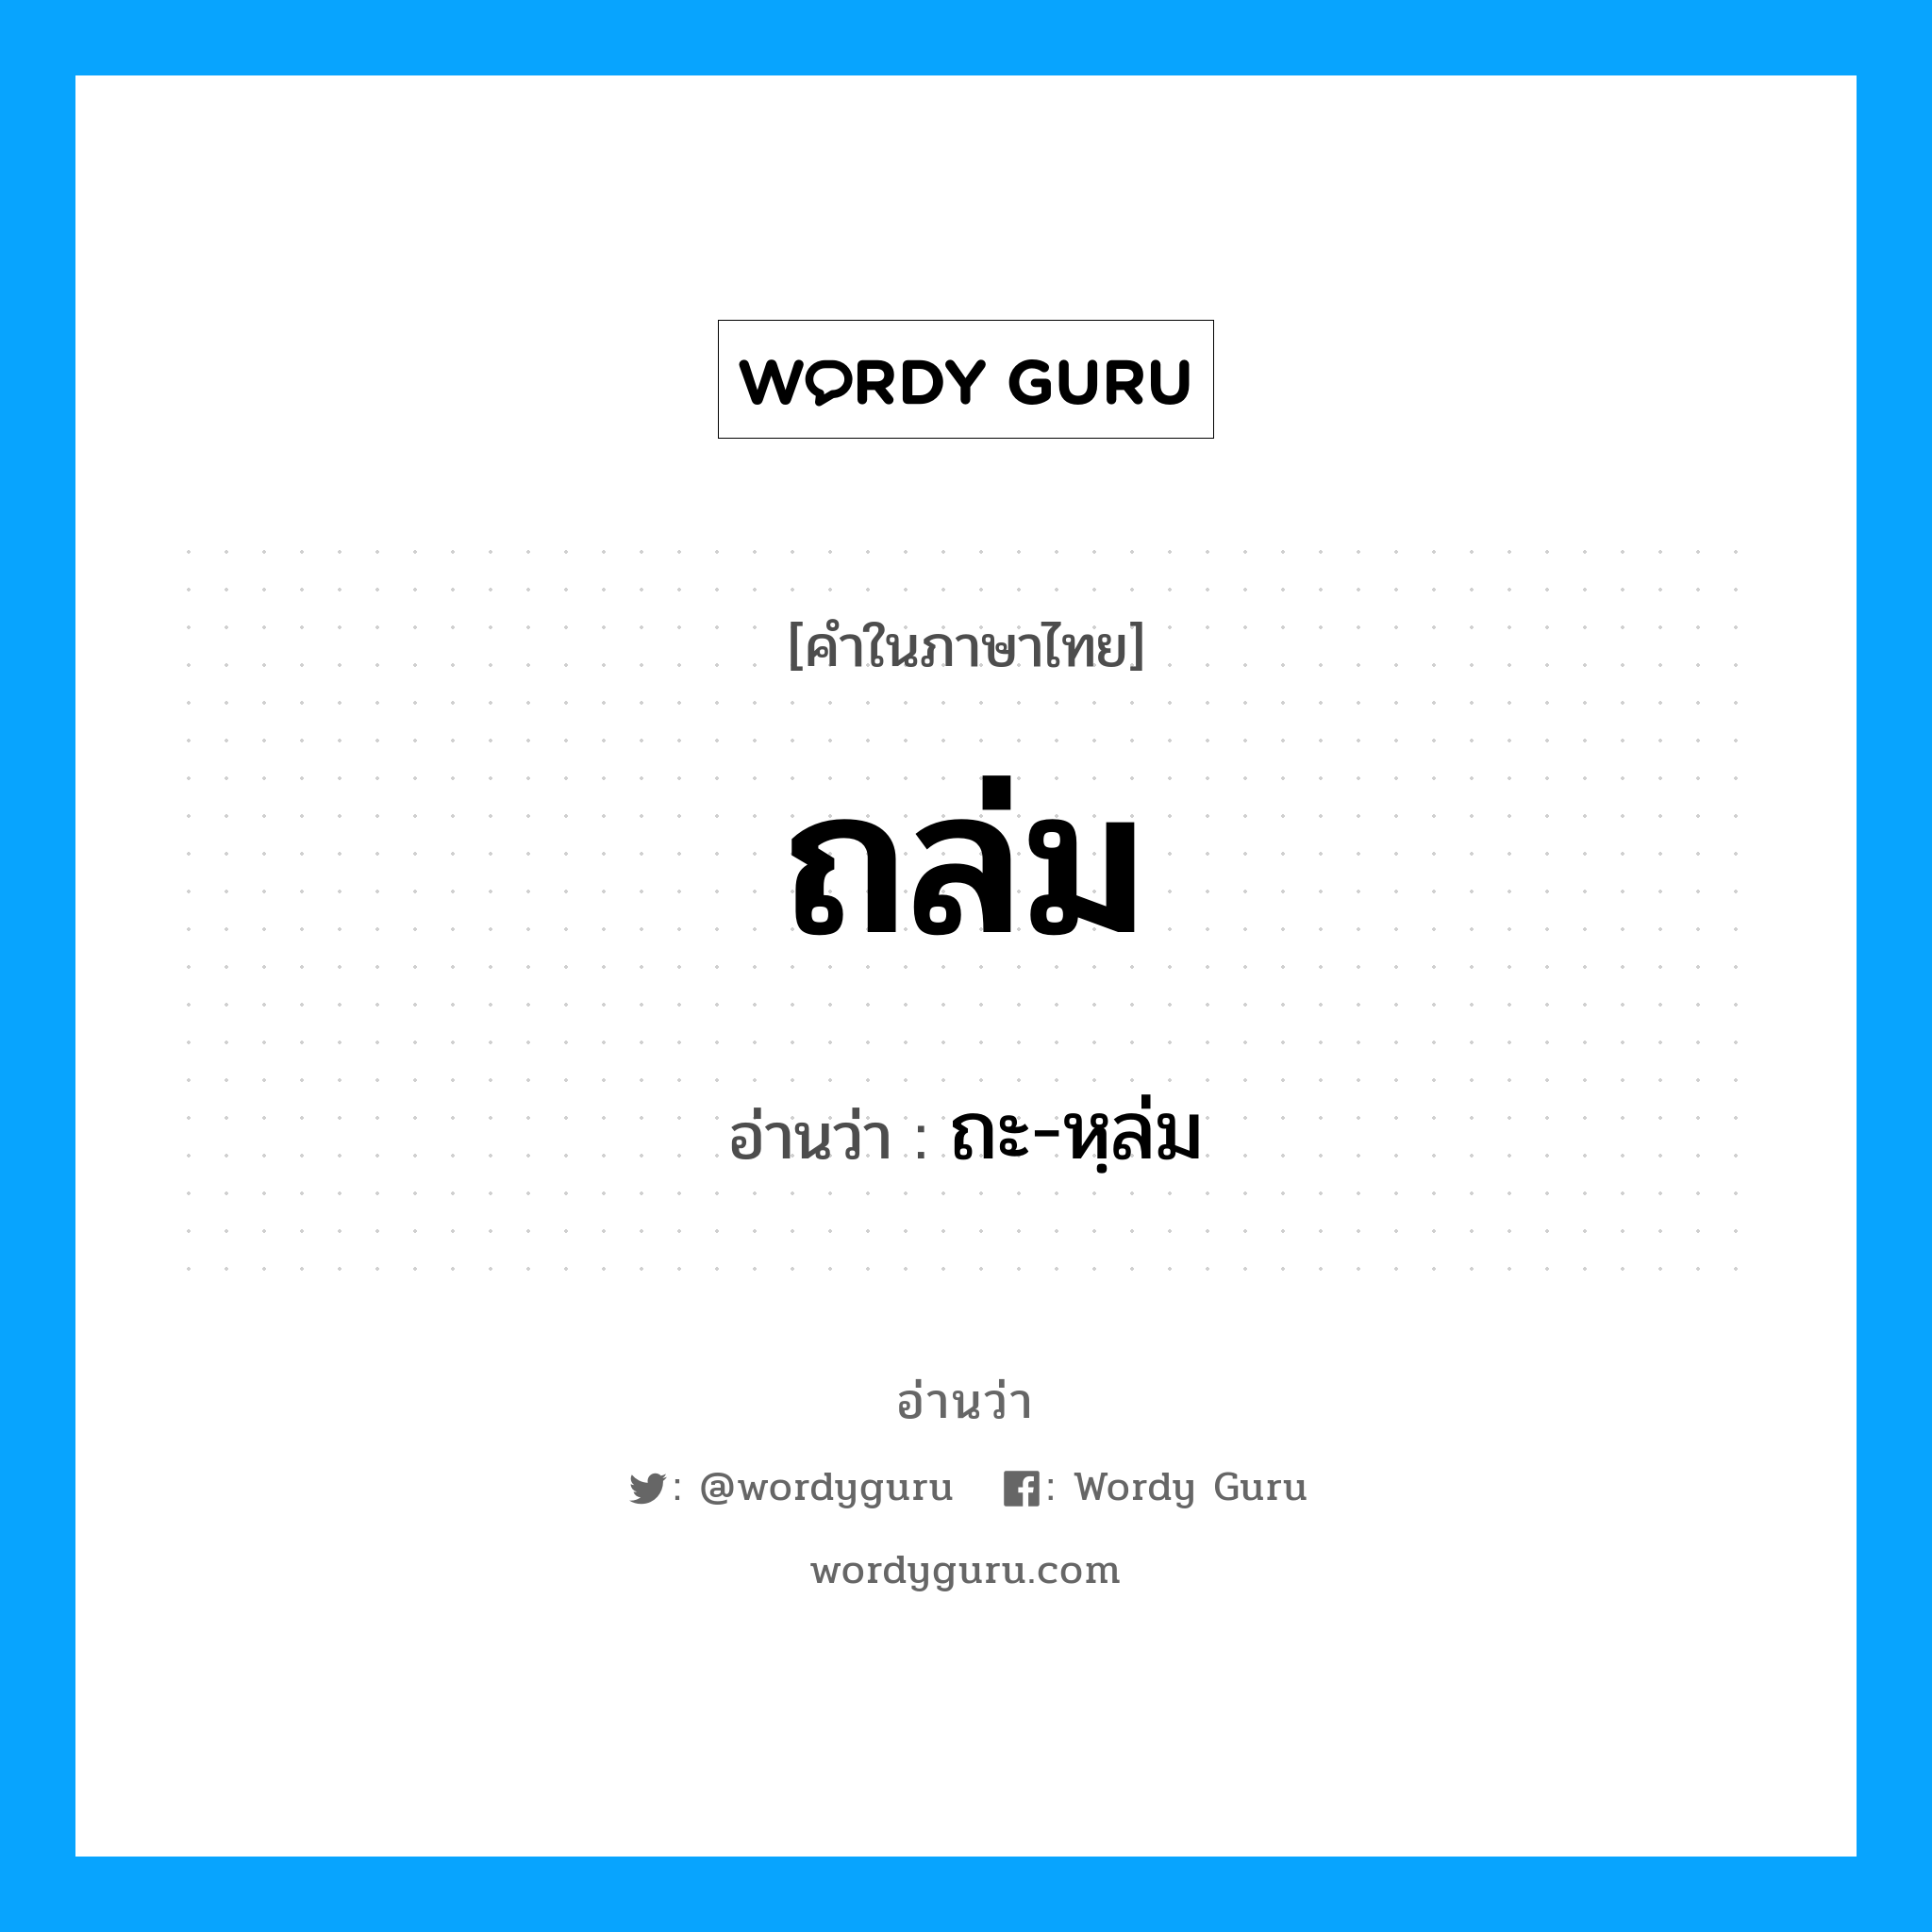 ถะ-หฺล่ม เป็นคำอ่านของคำไหน?, คำในภาษาไทย ถะ-หฺล่ม อ่านว่า ถล่ม